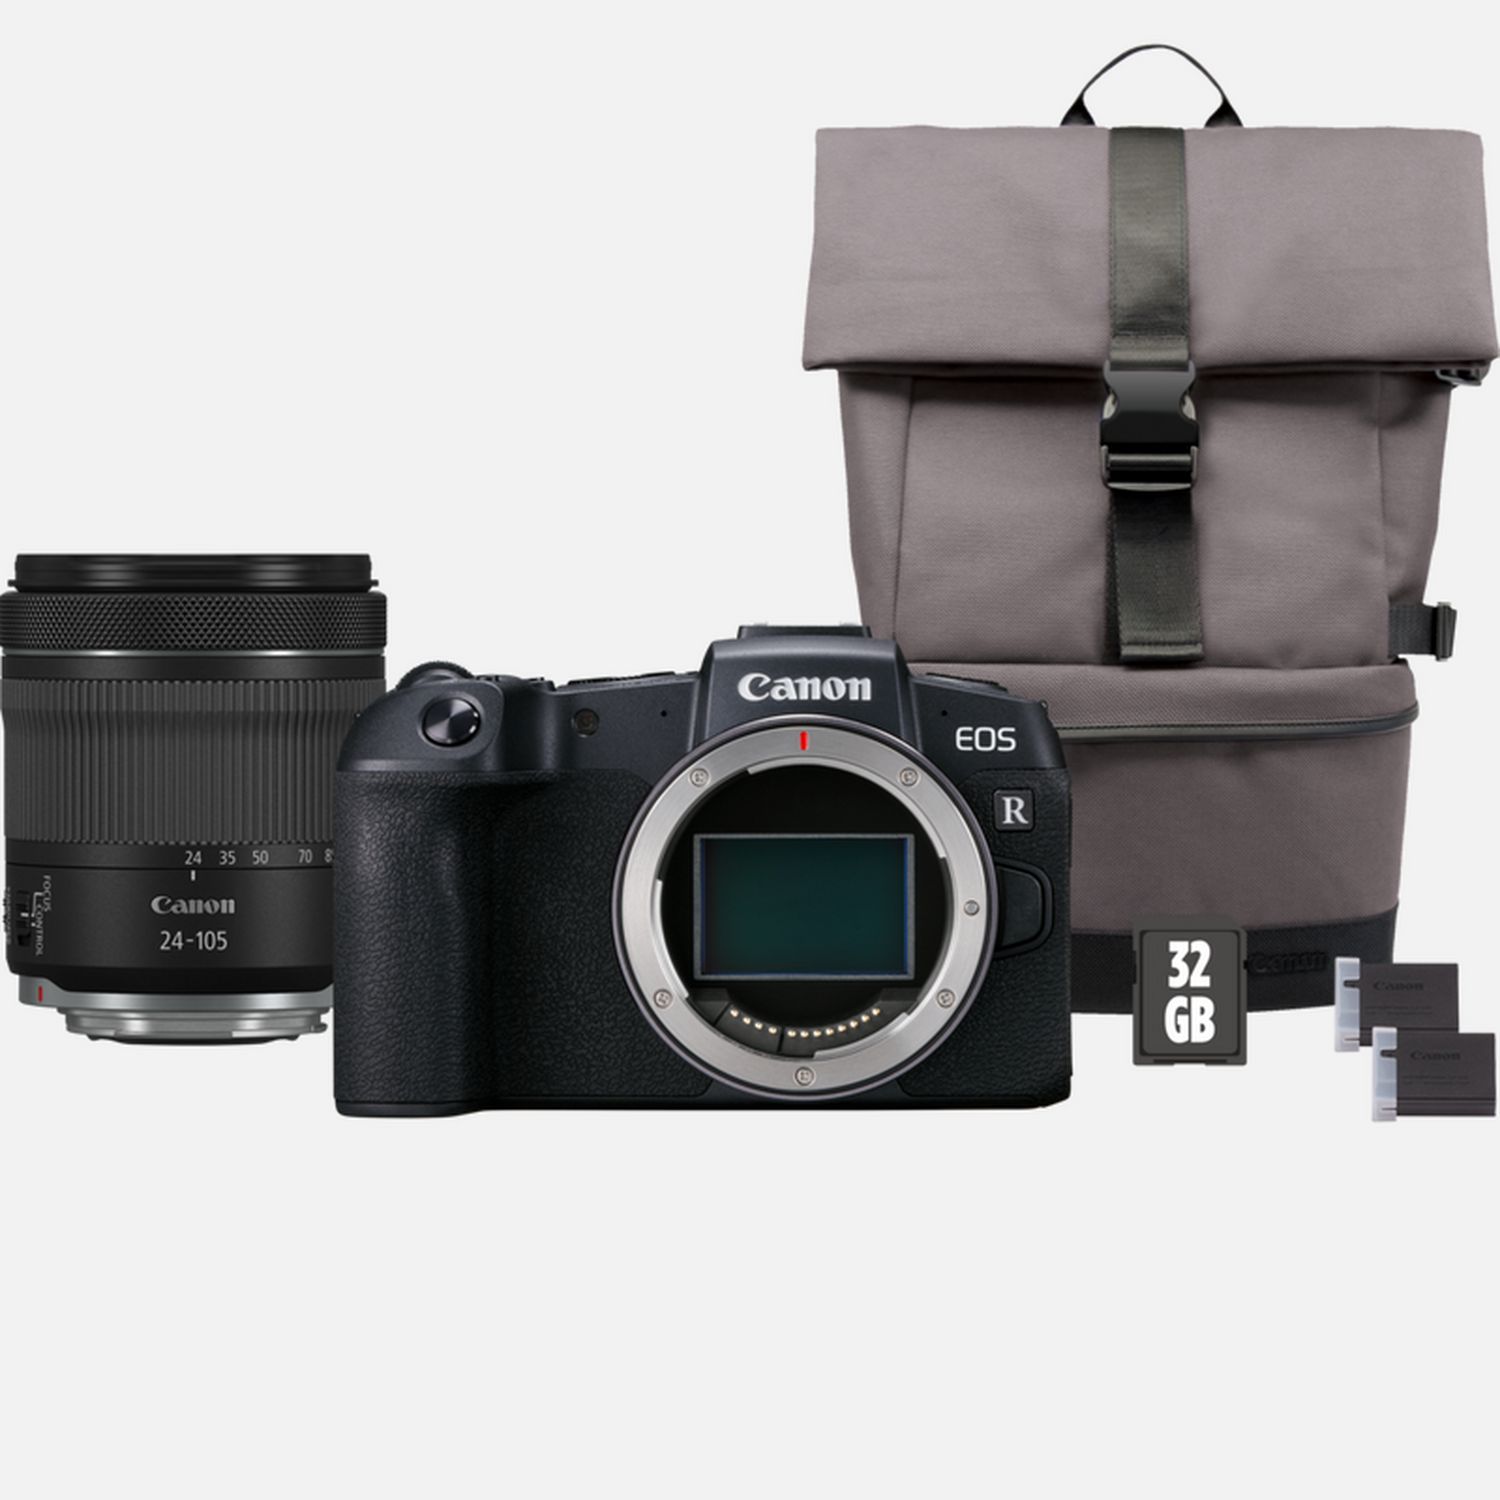 Image of Fotocamera Canon EOS RP + Obiettivo RF 24-105mm IS STM + Zaino + Scheda SD + Batteria di ricambio